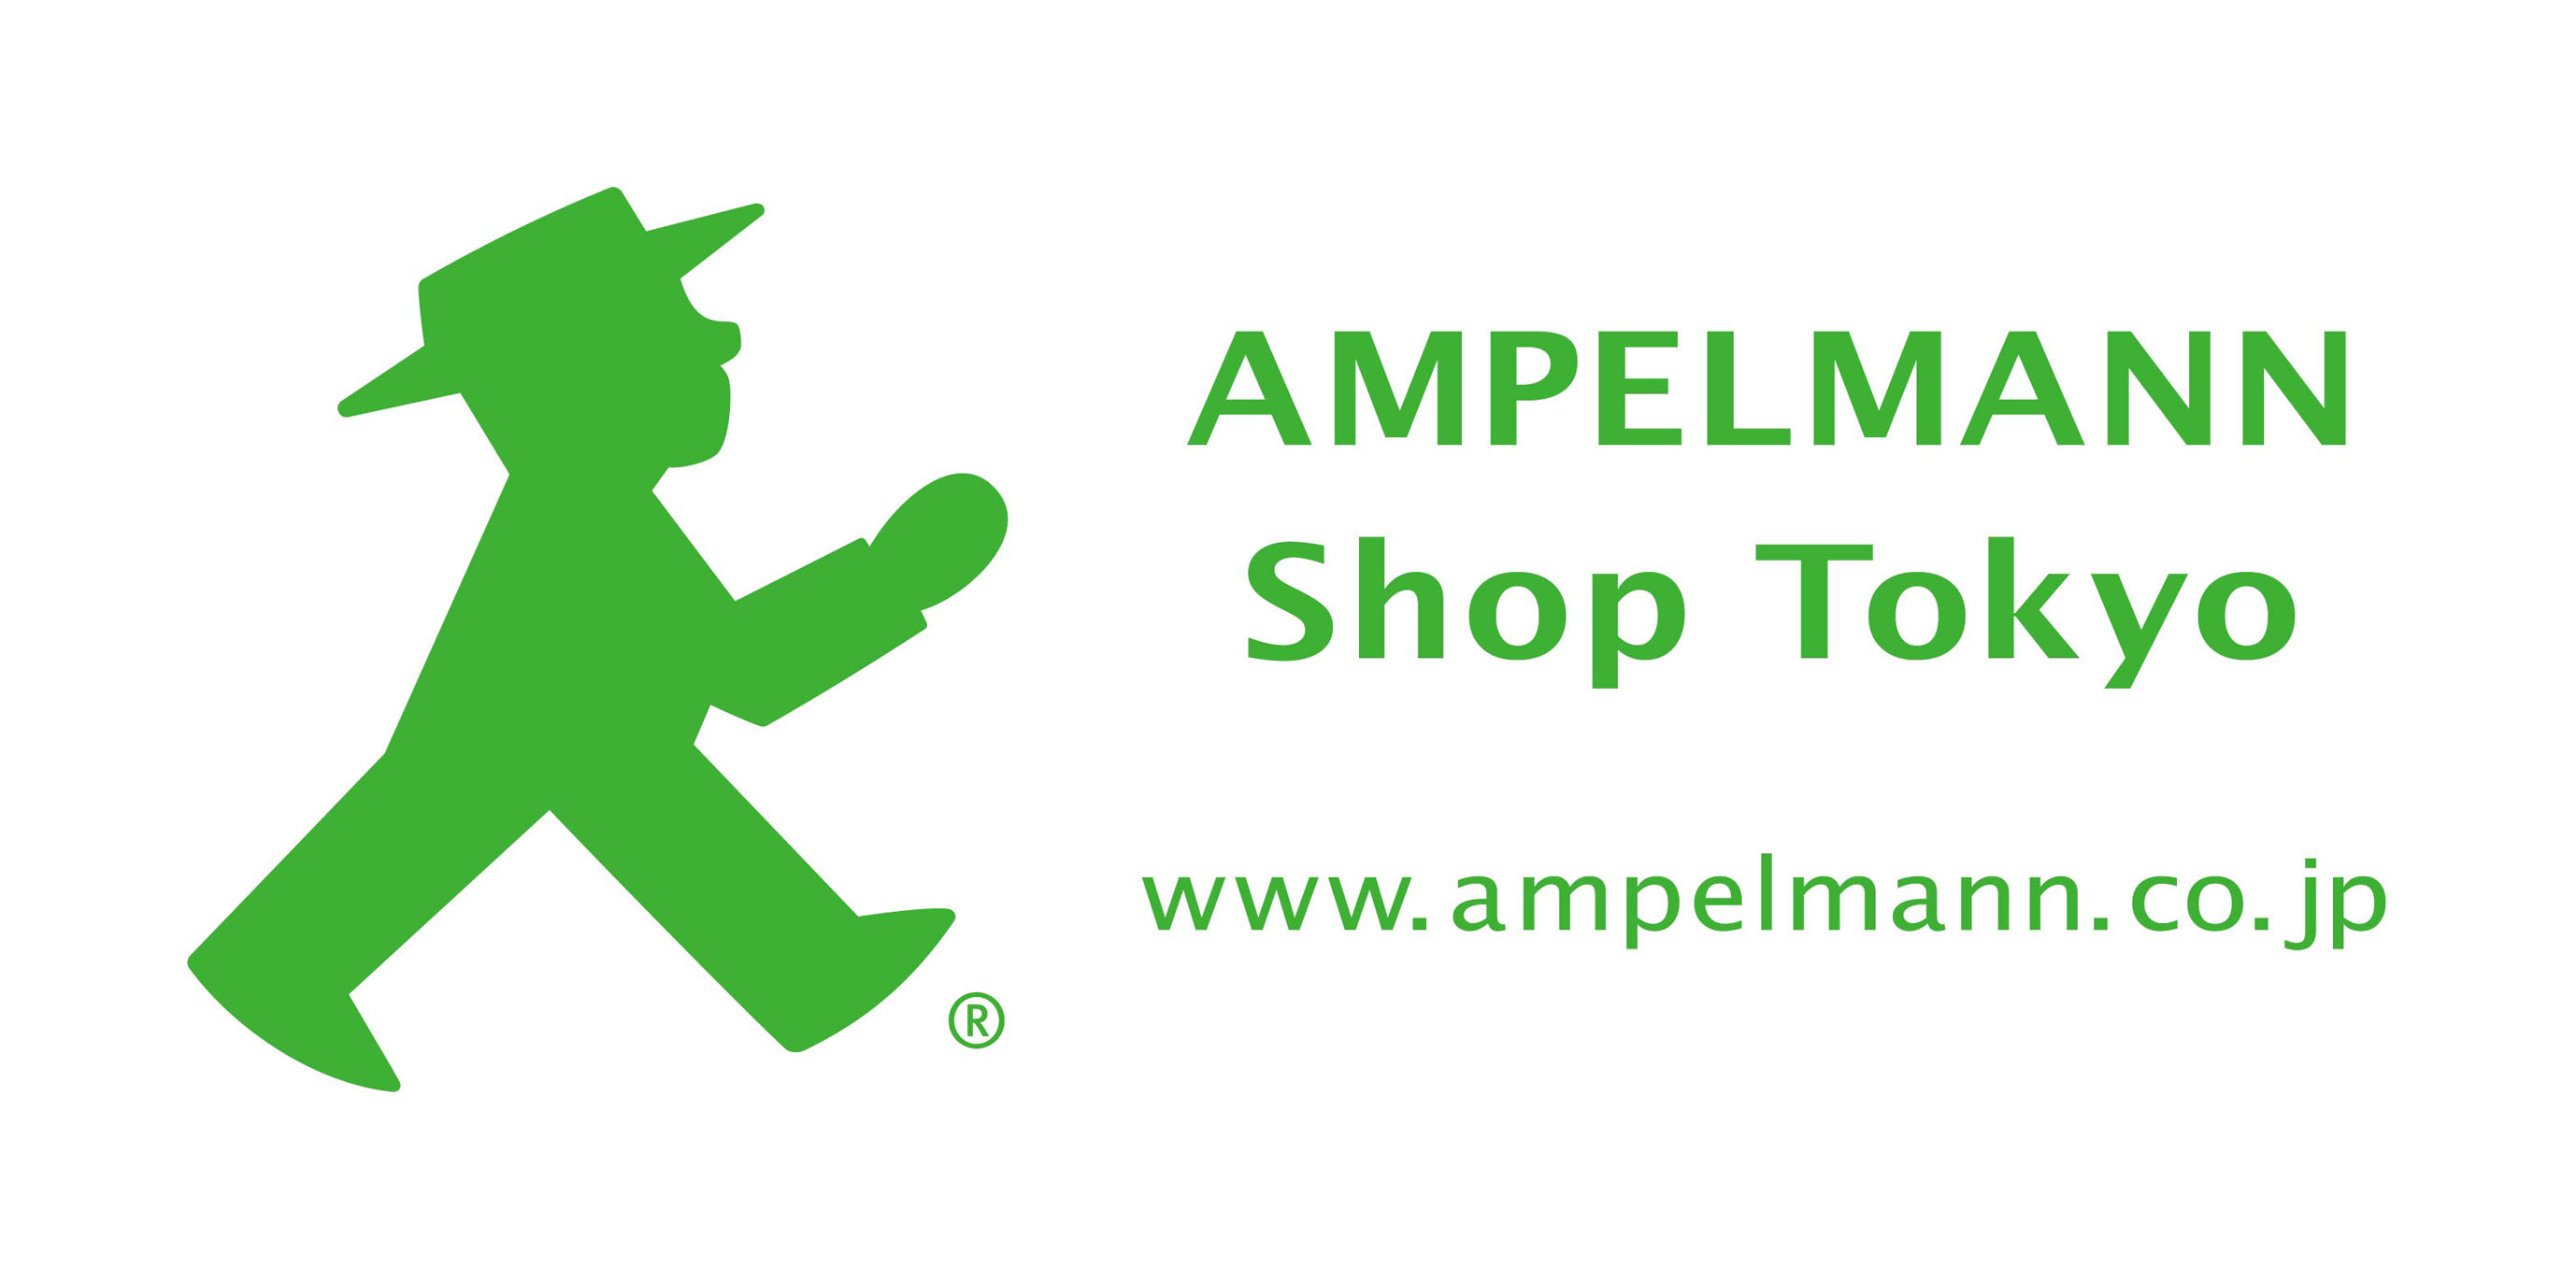 日本初 ドイツ生まれの信号機キャラクター アンペルマン の路面店舗 Ampelmann Shop Tokyo が4月24日 渋谷にオープン 株式会社another Bのプレスリリース